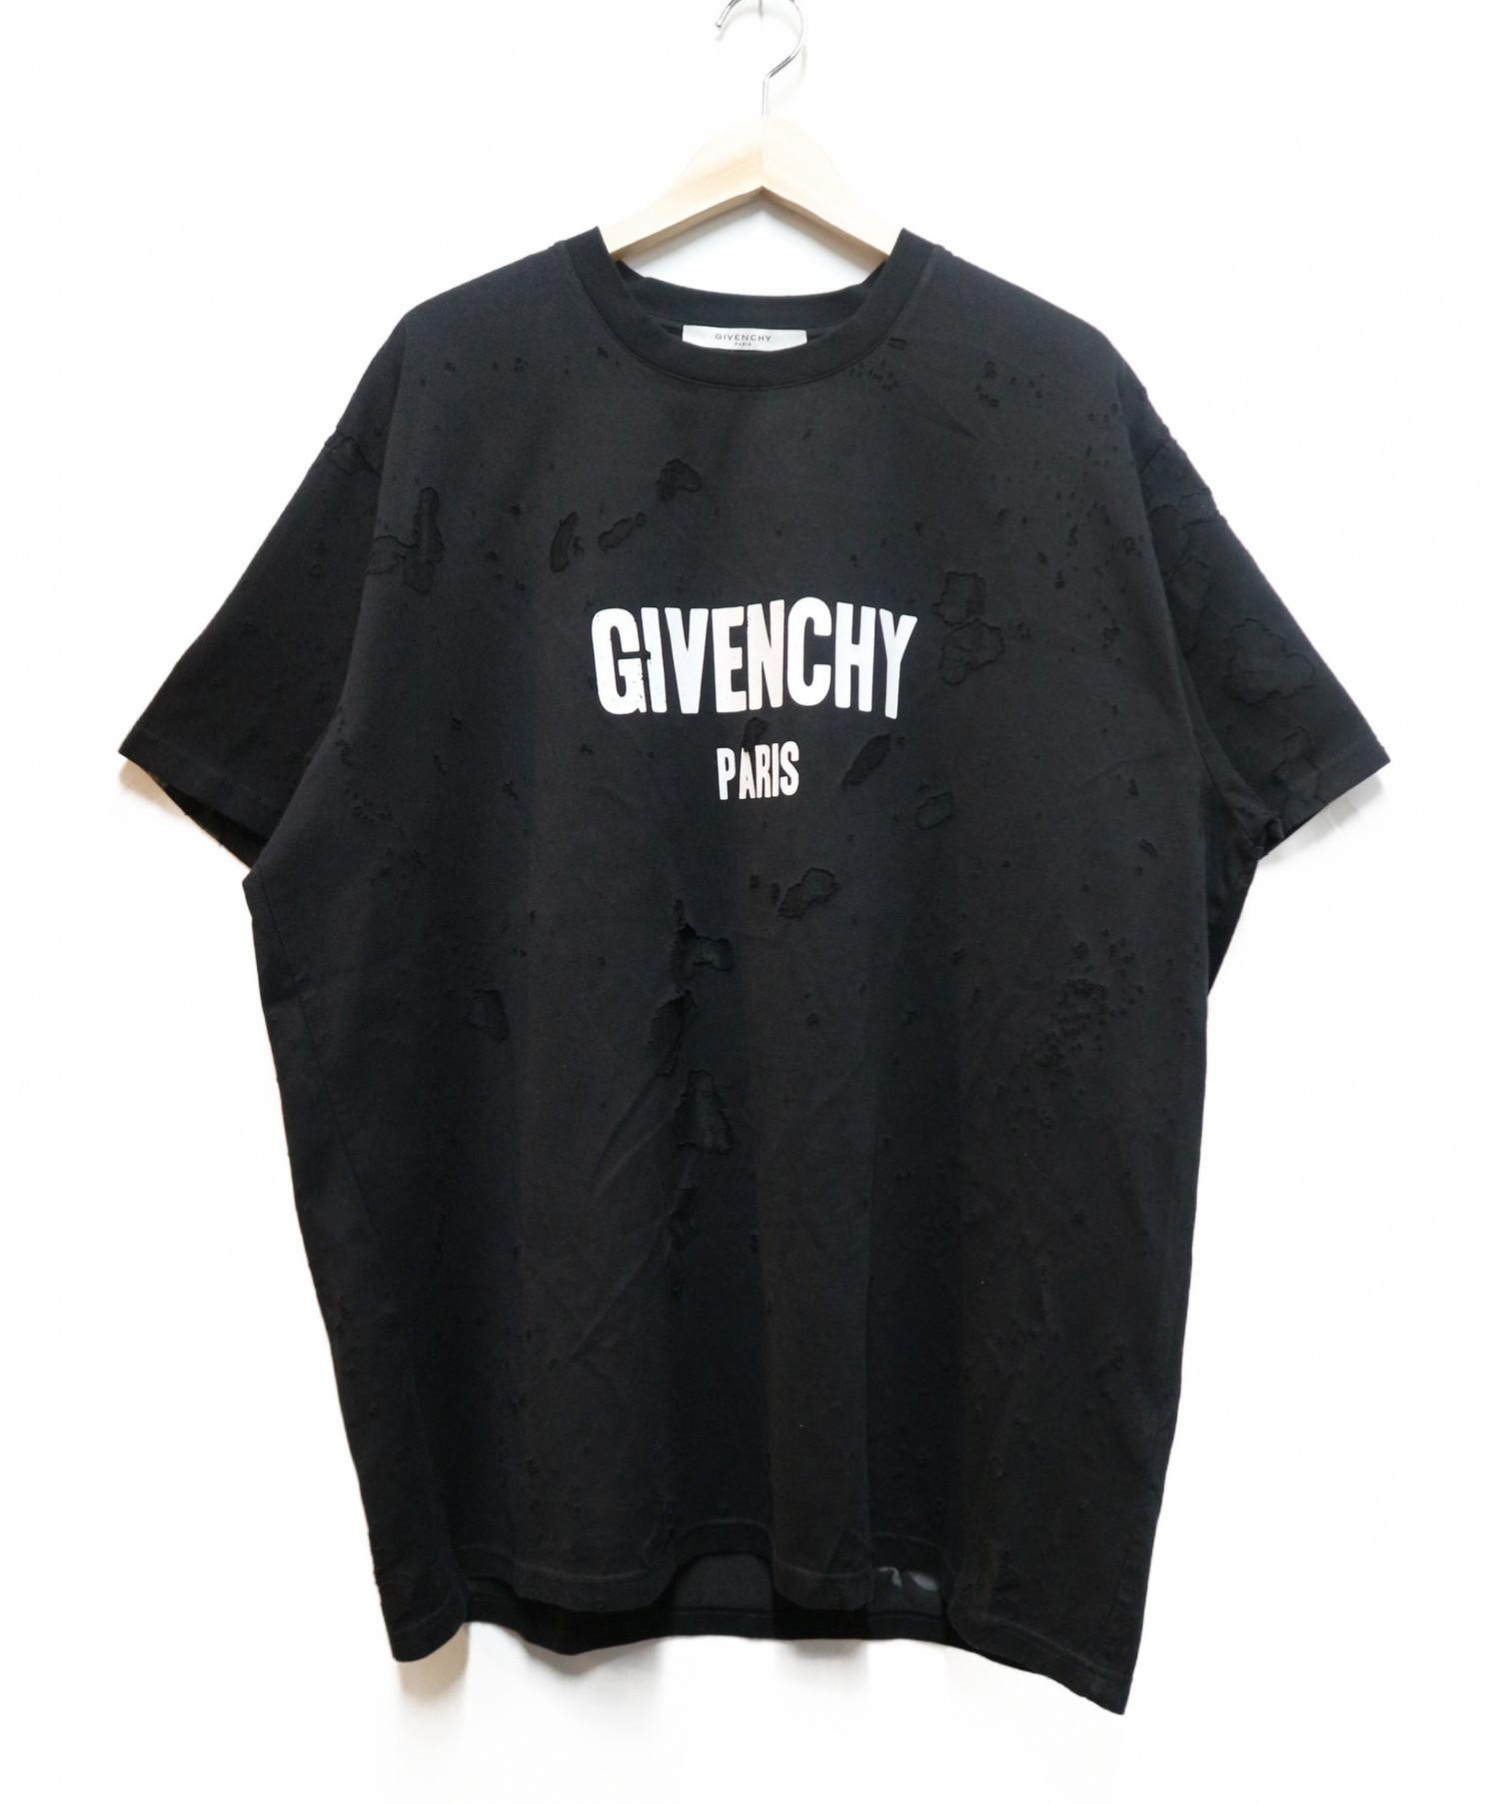 GIVENCHY (ジバンシー) デストロイドオーバーサイズTシャツ 